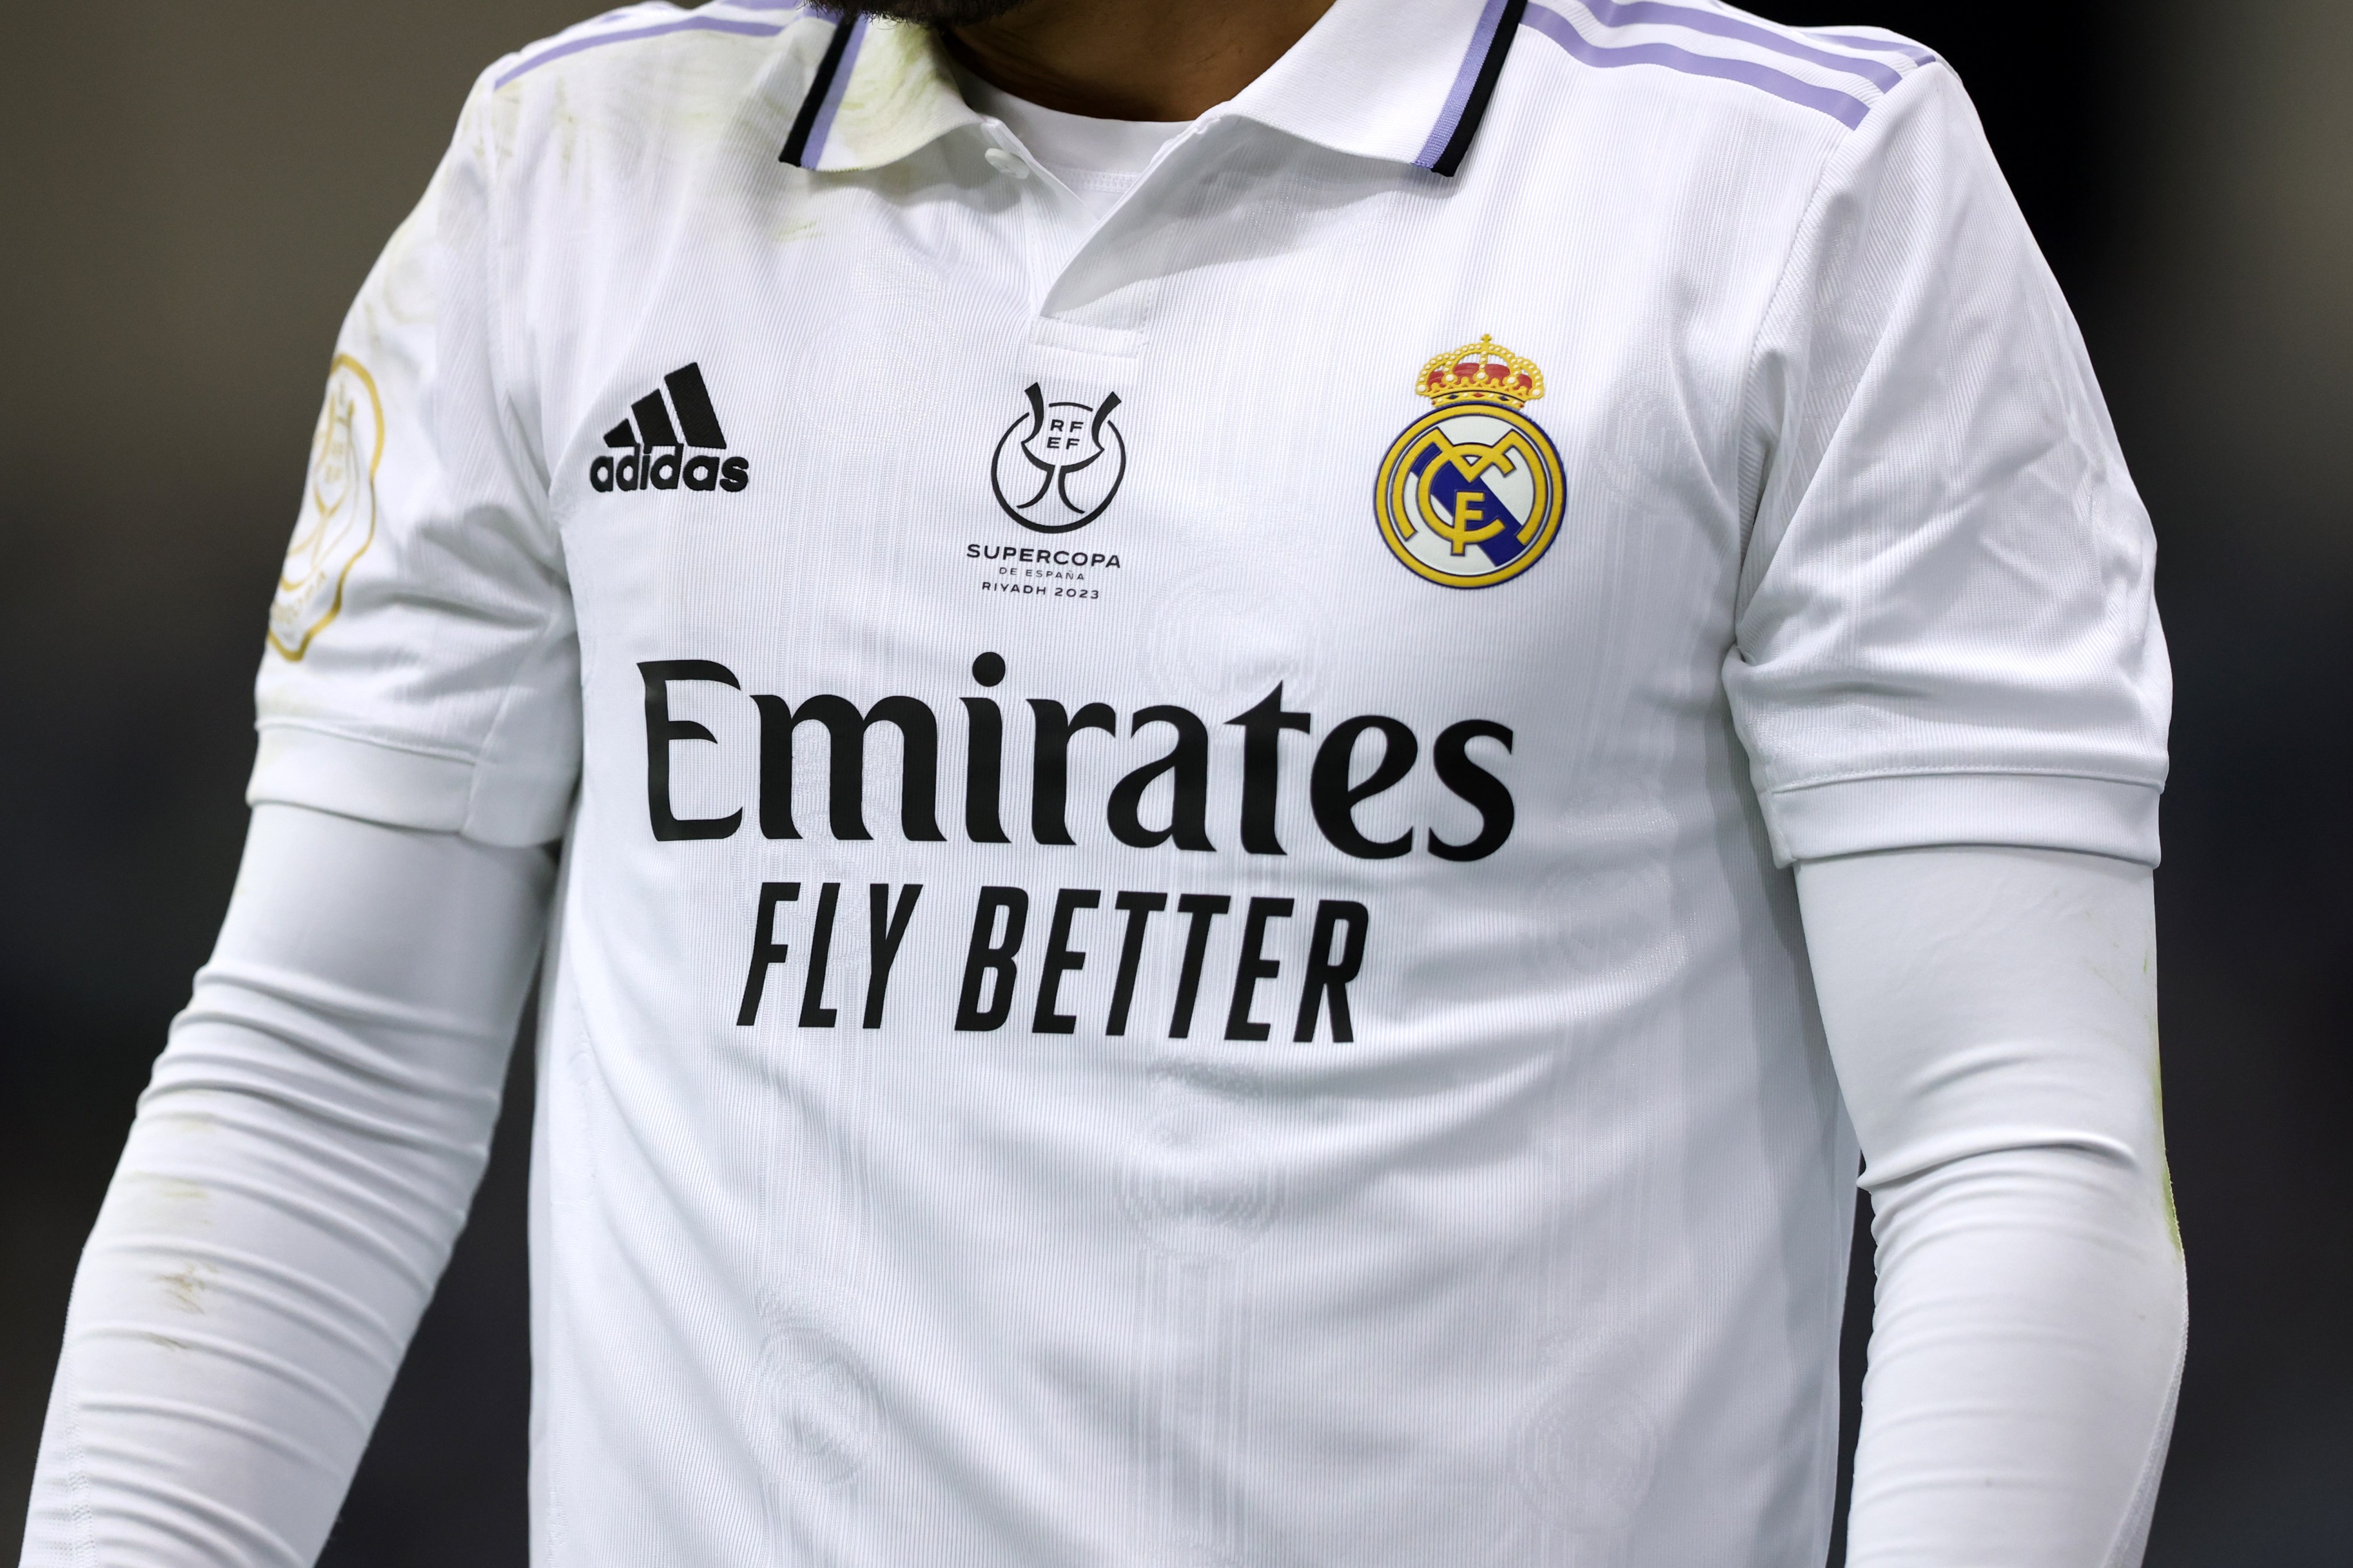 Tienda oficial del Real Madrid prohíbe estampar camisetas con el nombre de  Mbappé - El Diario NY